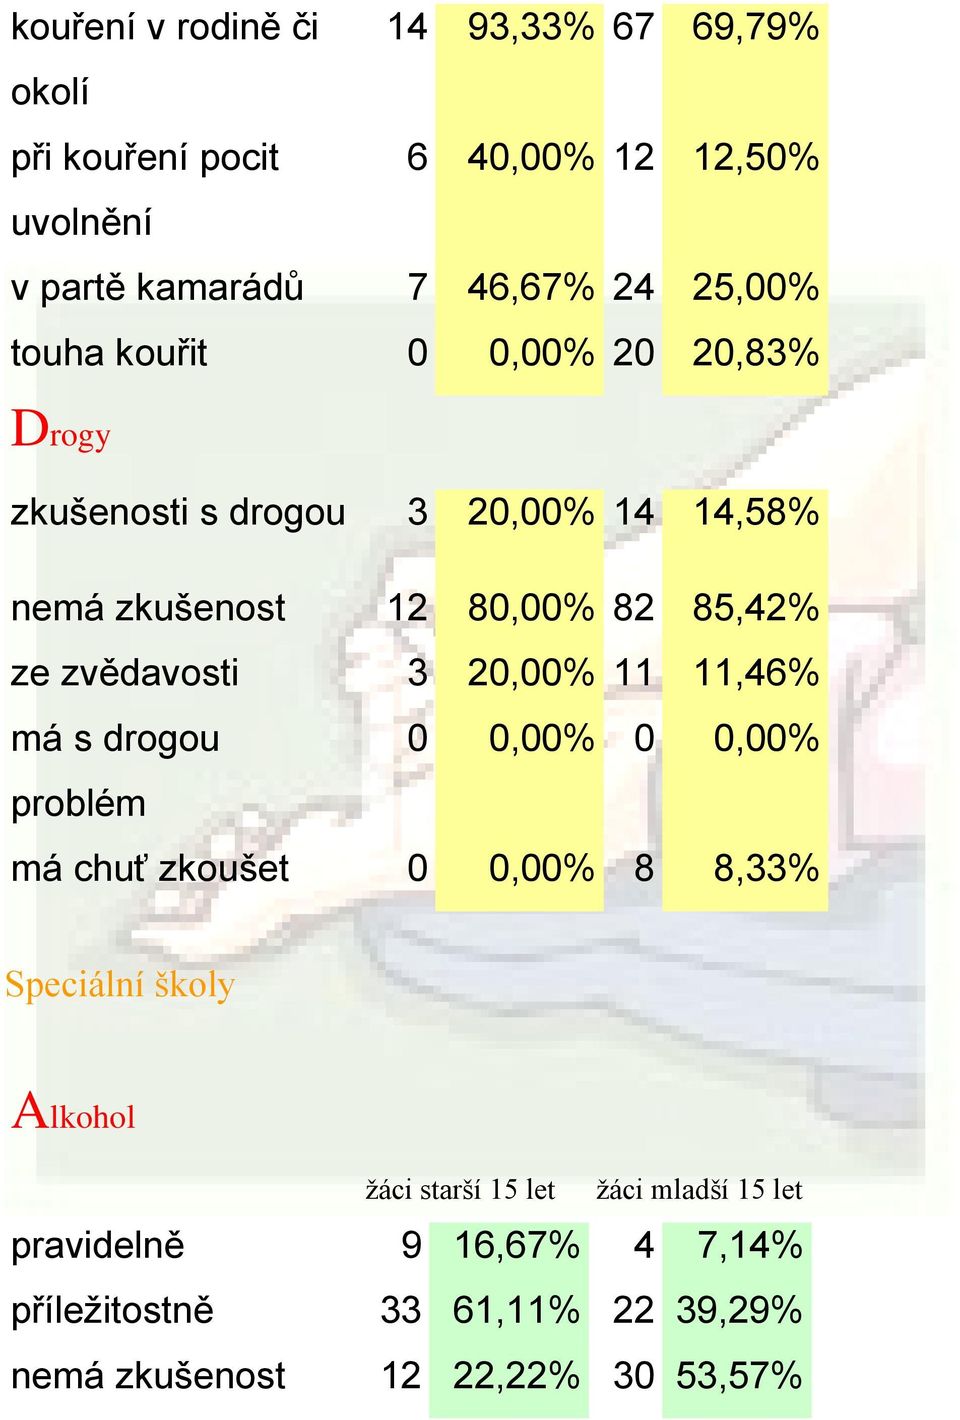 zvědavosti 3 20,00% 11 11,46% má s drogou 0 0,00% 0 0,00% problém má chuť zkoušet 0 0,00% 8 8,33% Speciální školy Alkohol